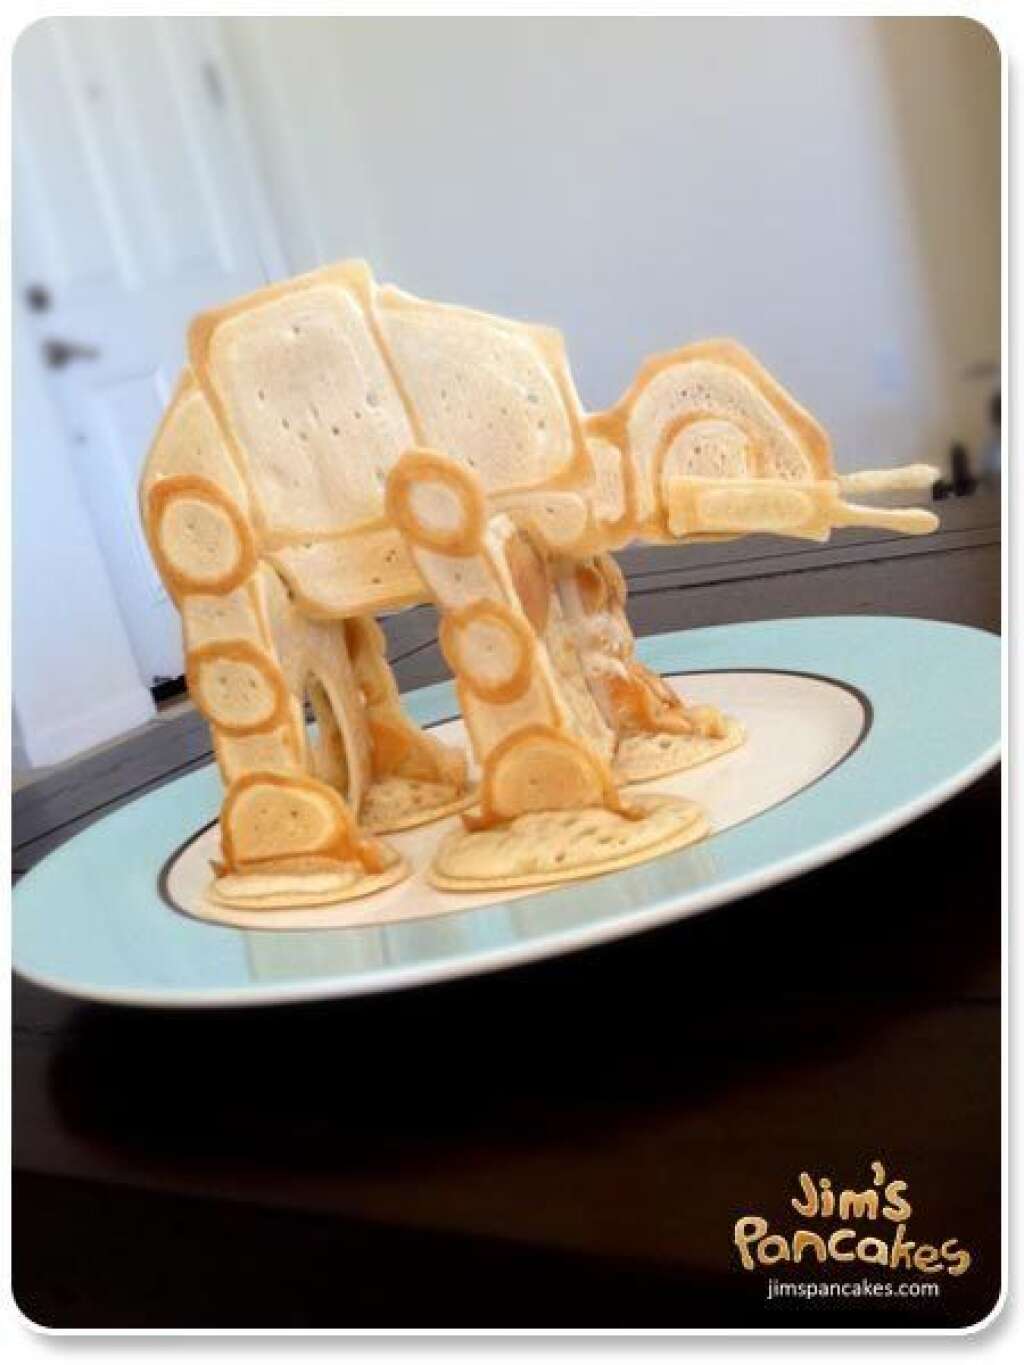 Le pancake Star Wars -